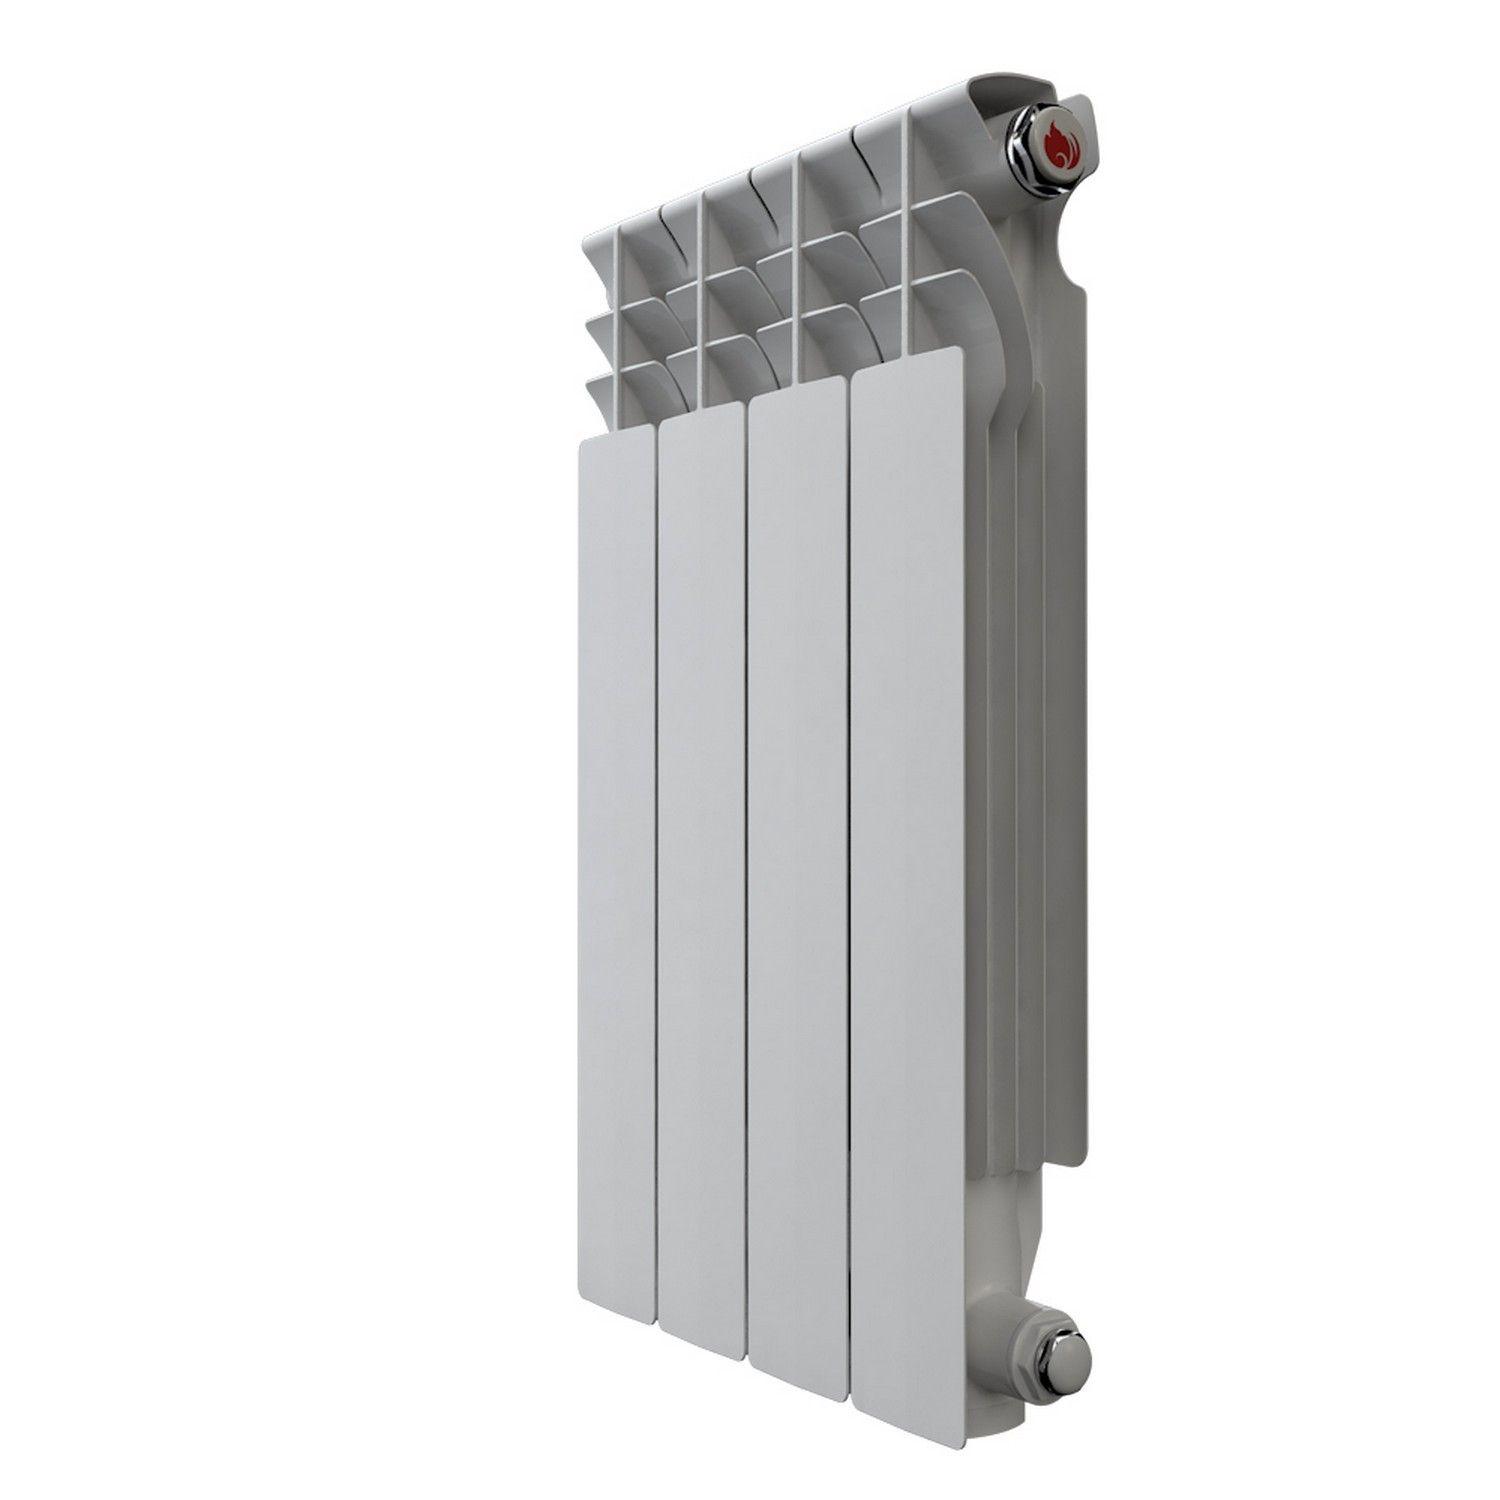 Радиатор алюминиевый НРЗ Люкс 500*80 4 сек.